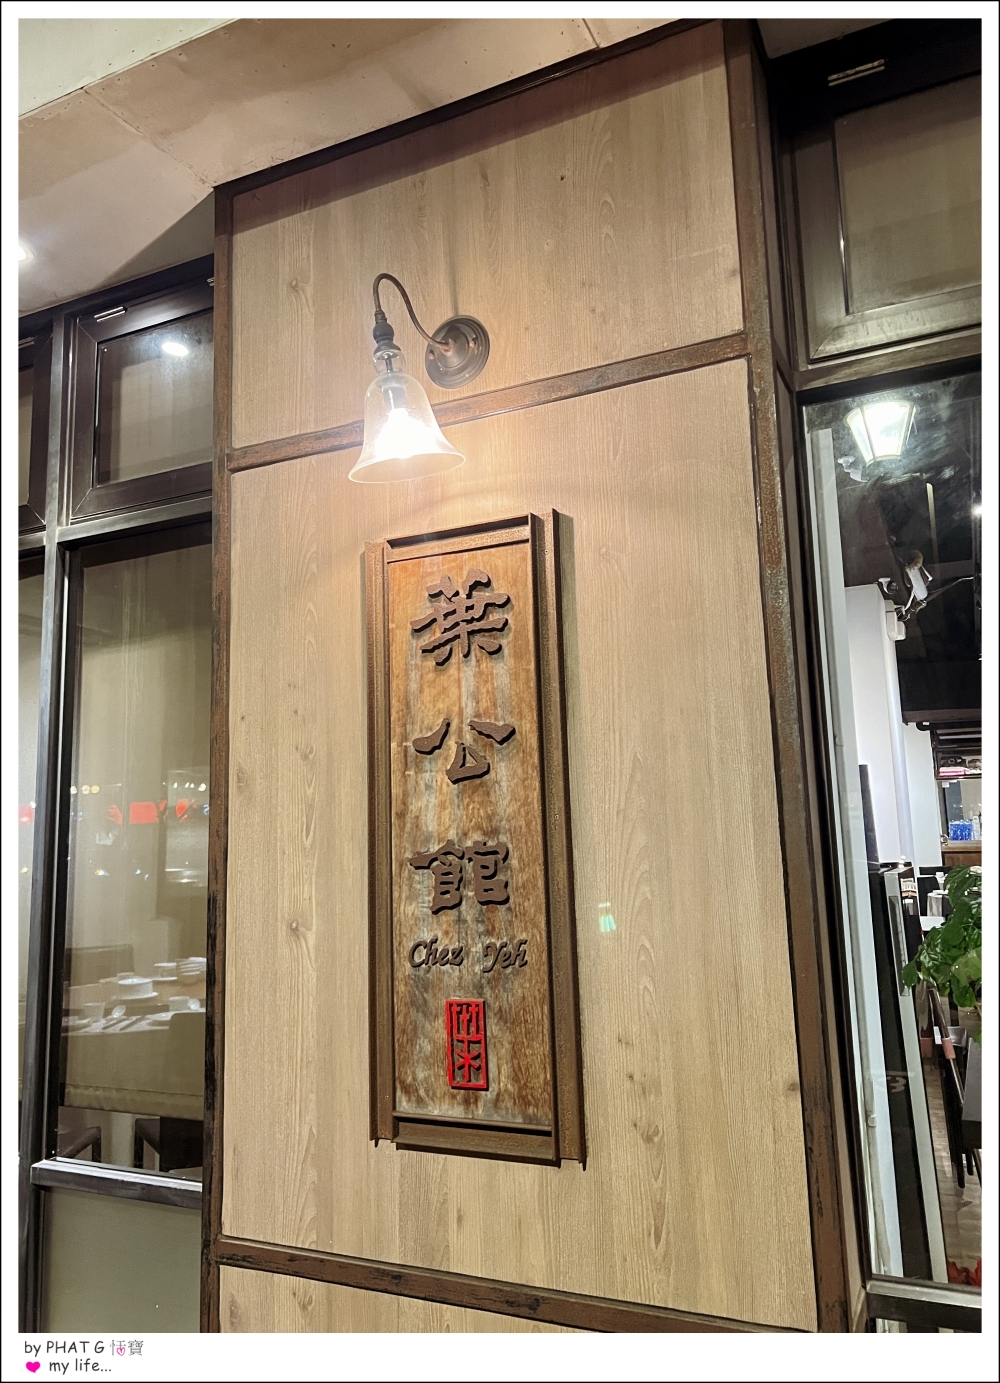 【❤ 美食】大安區安和路的精緻時尚美食上海料理- 葉公館滬菜